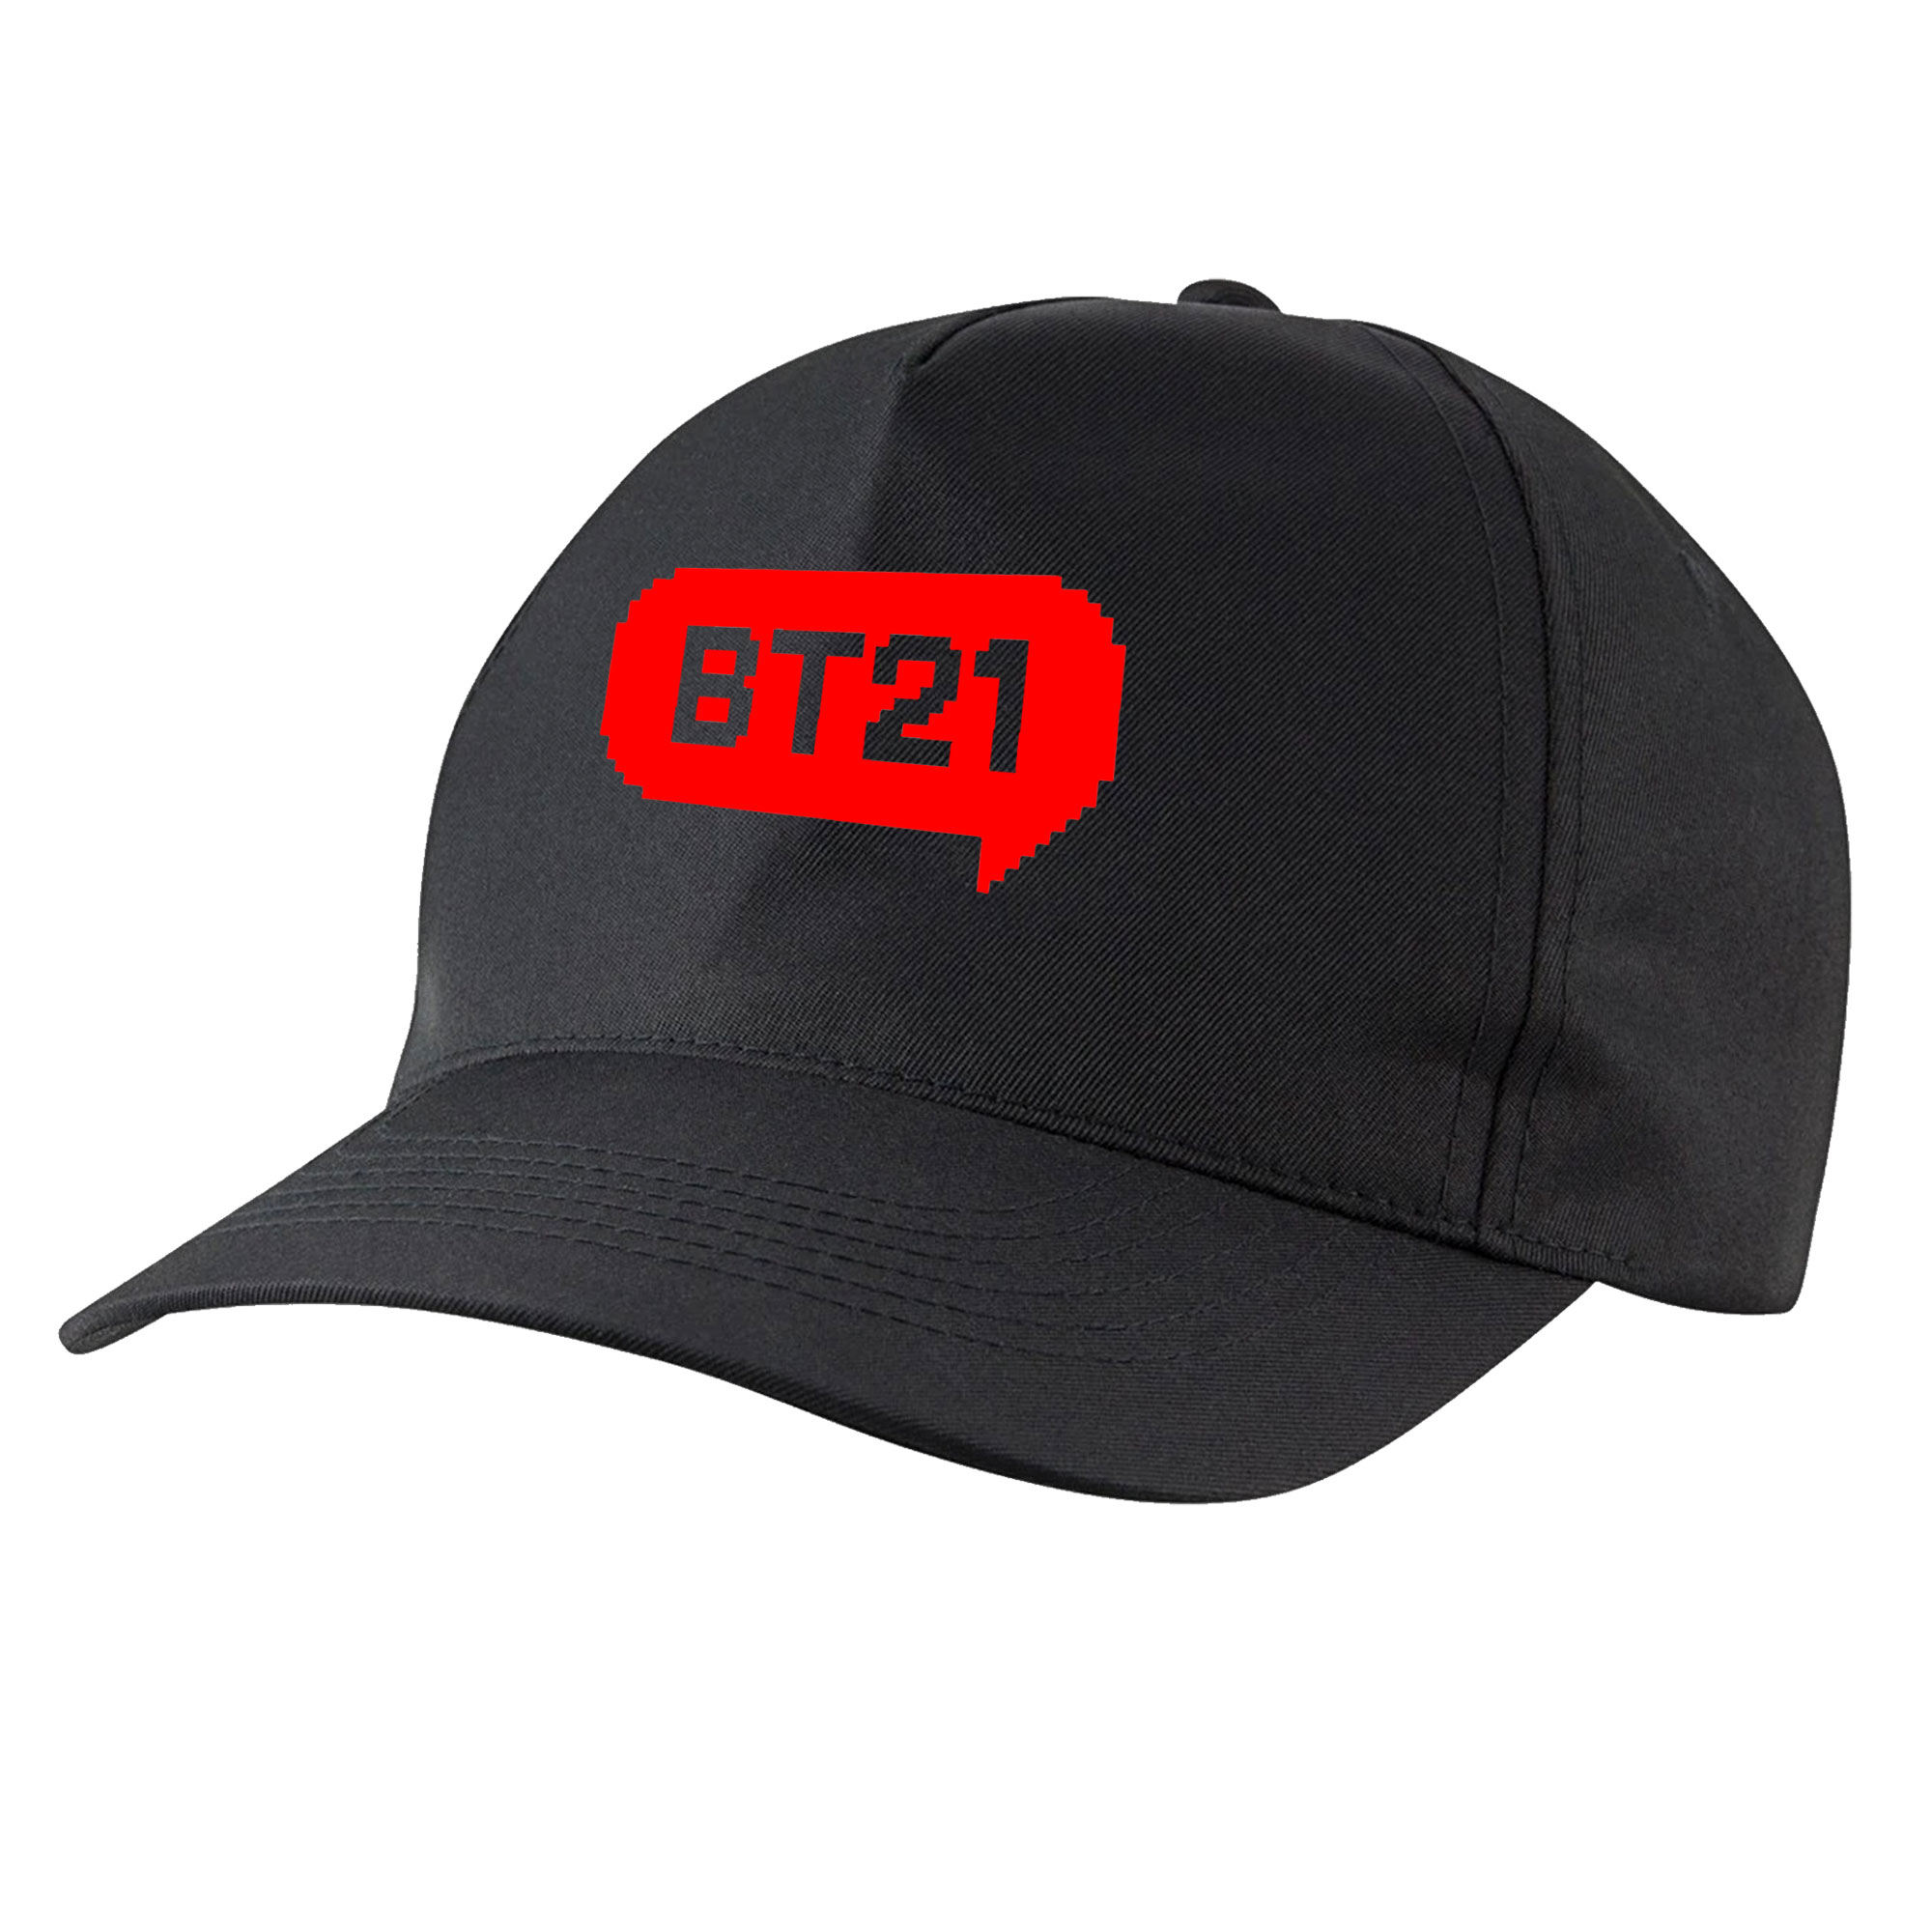 نکته خرید - قیمت روز کلاه کپ مدل bts bt-21 کد bb-70 خرید